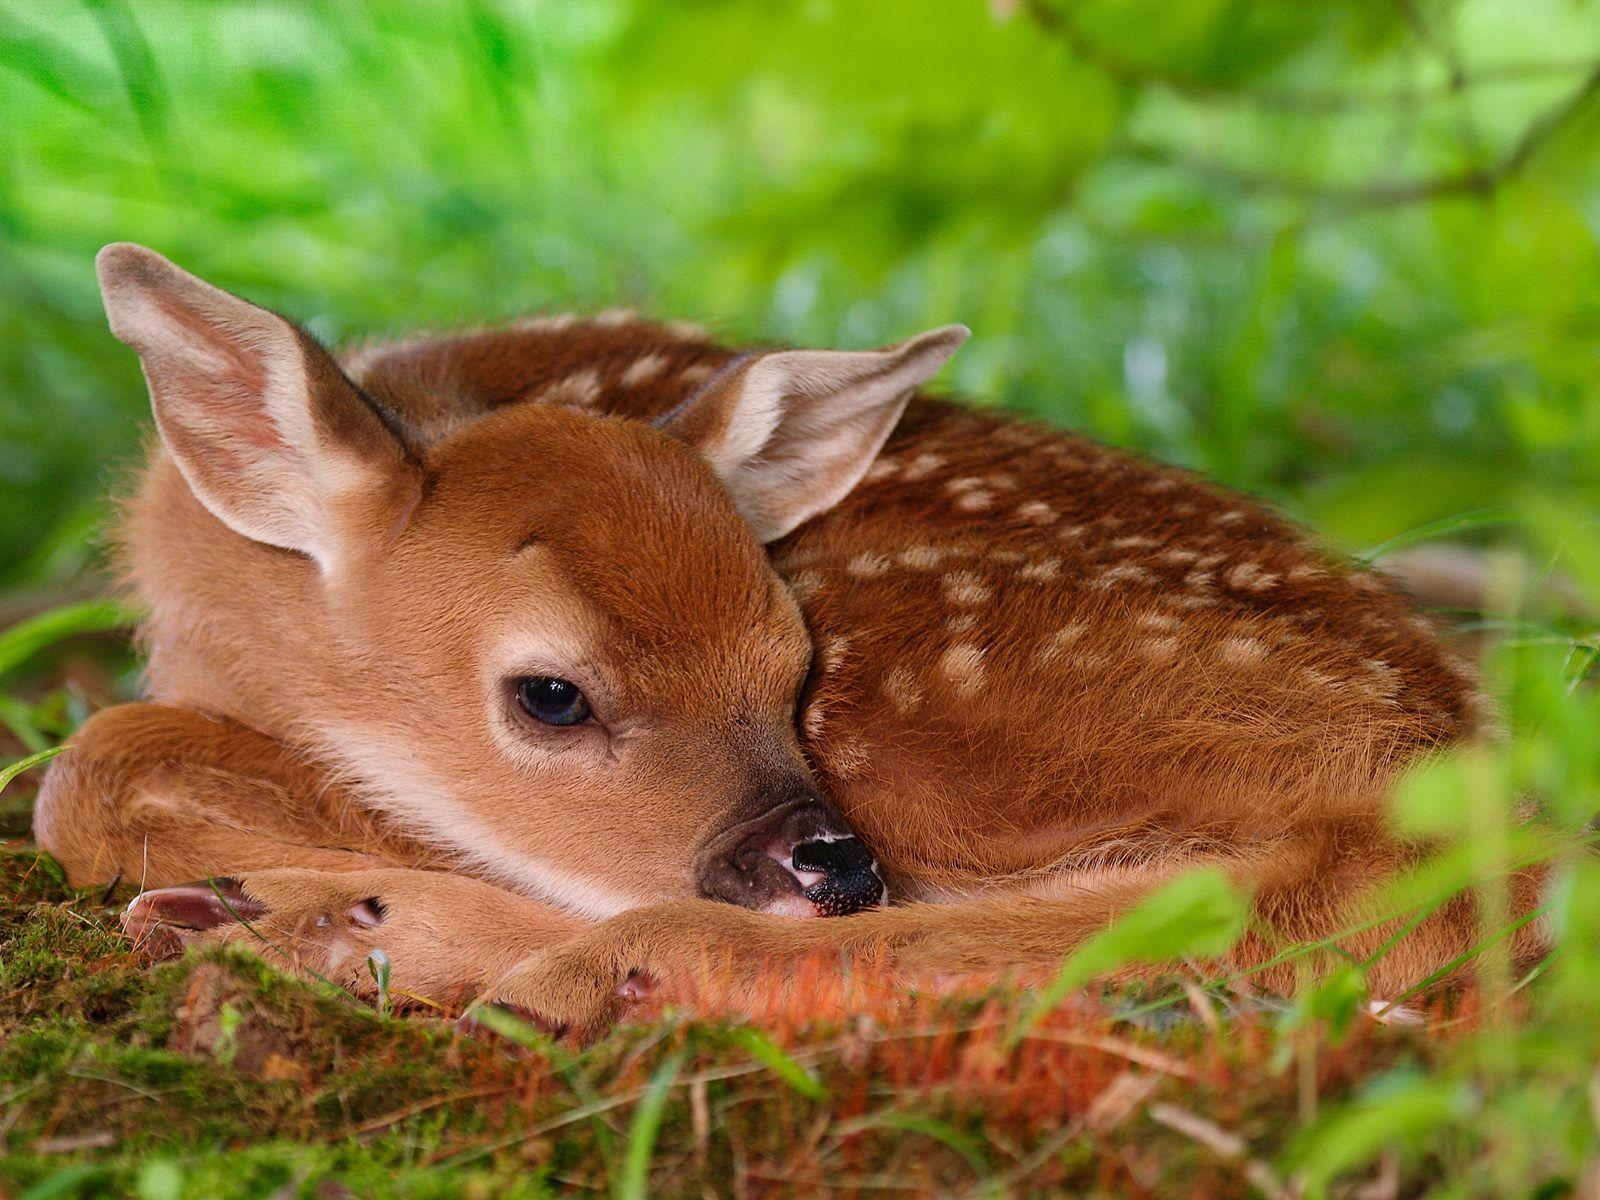 Baby Deer Wallpaper